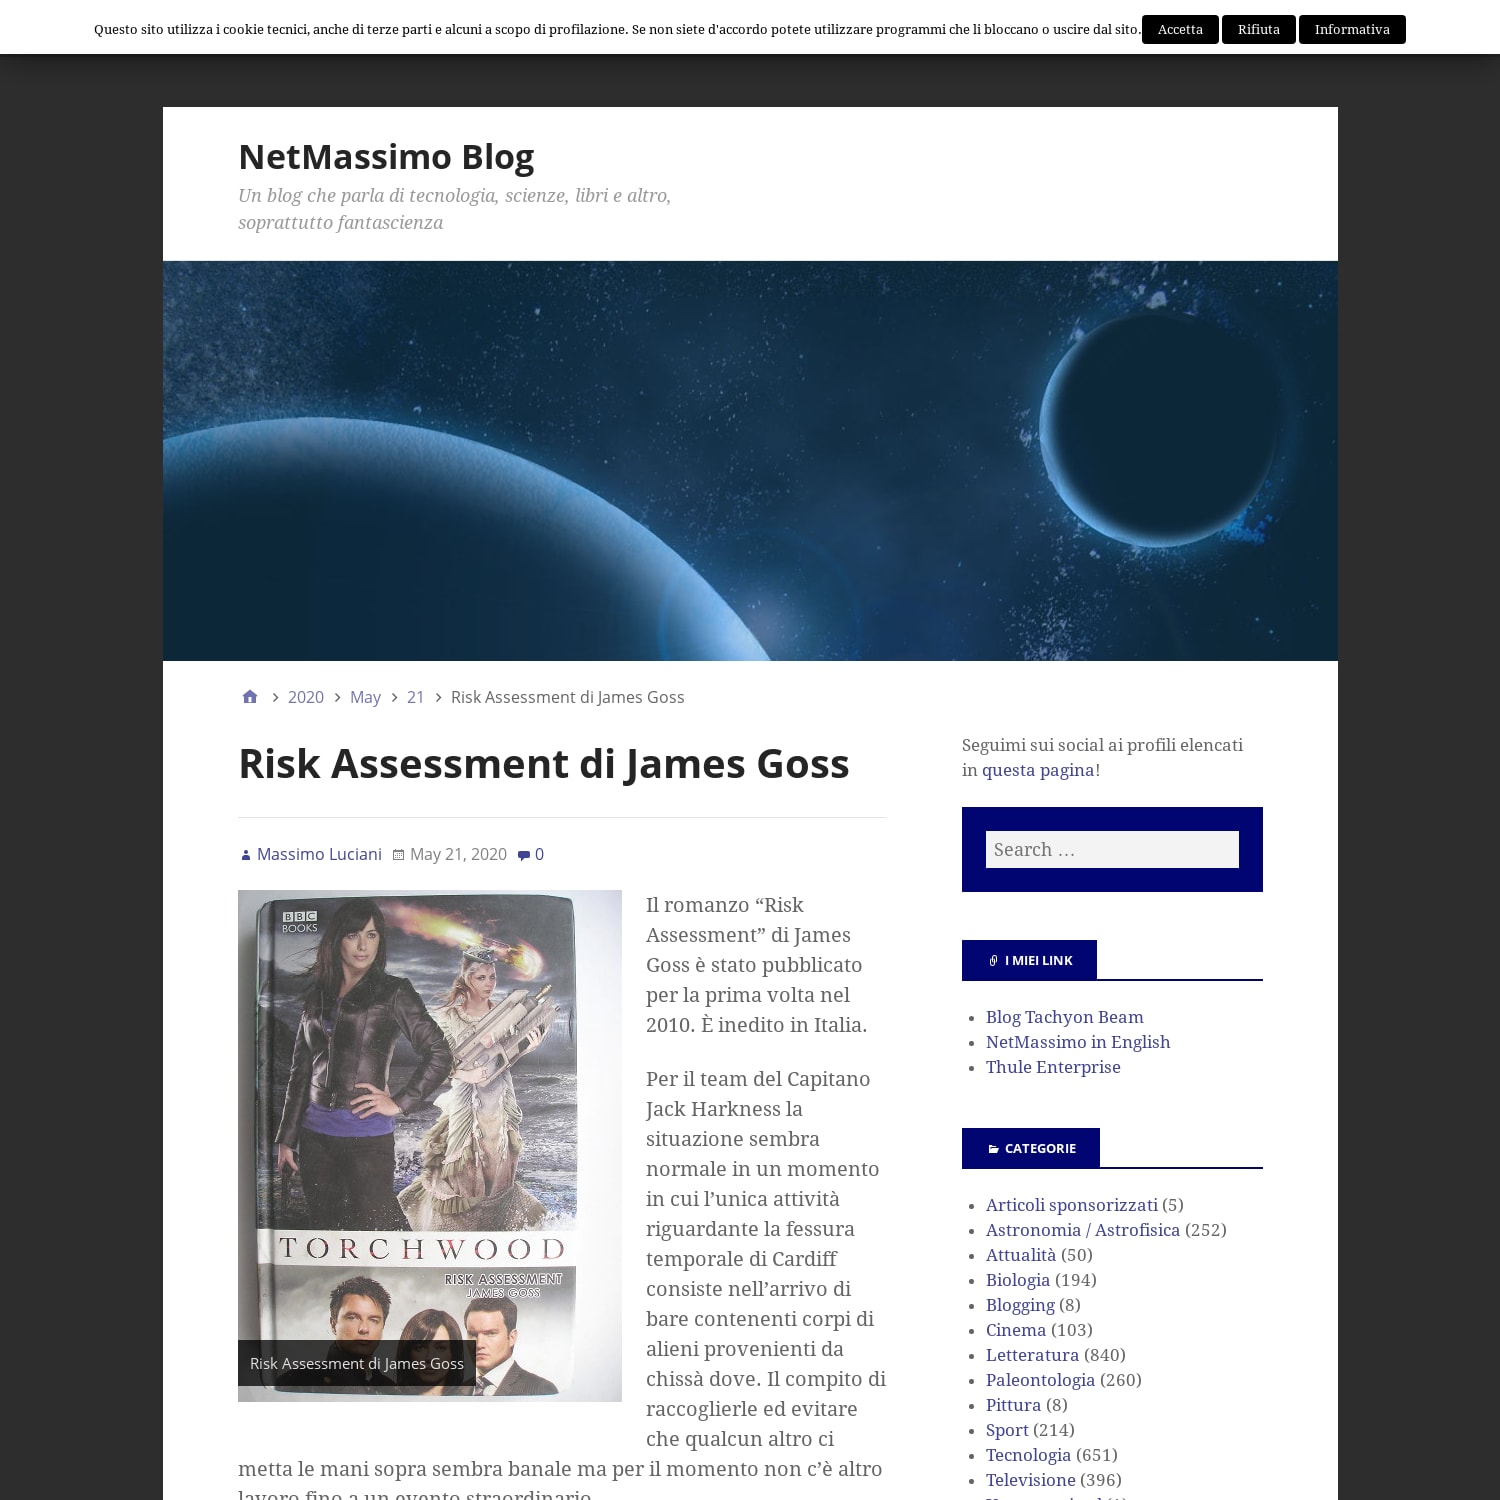 Risk Assessment di James Goss